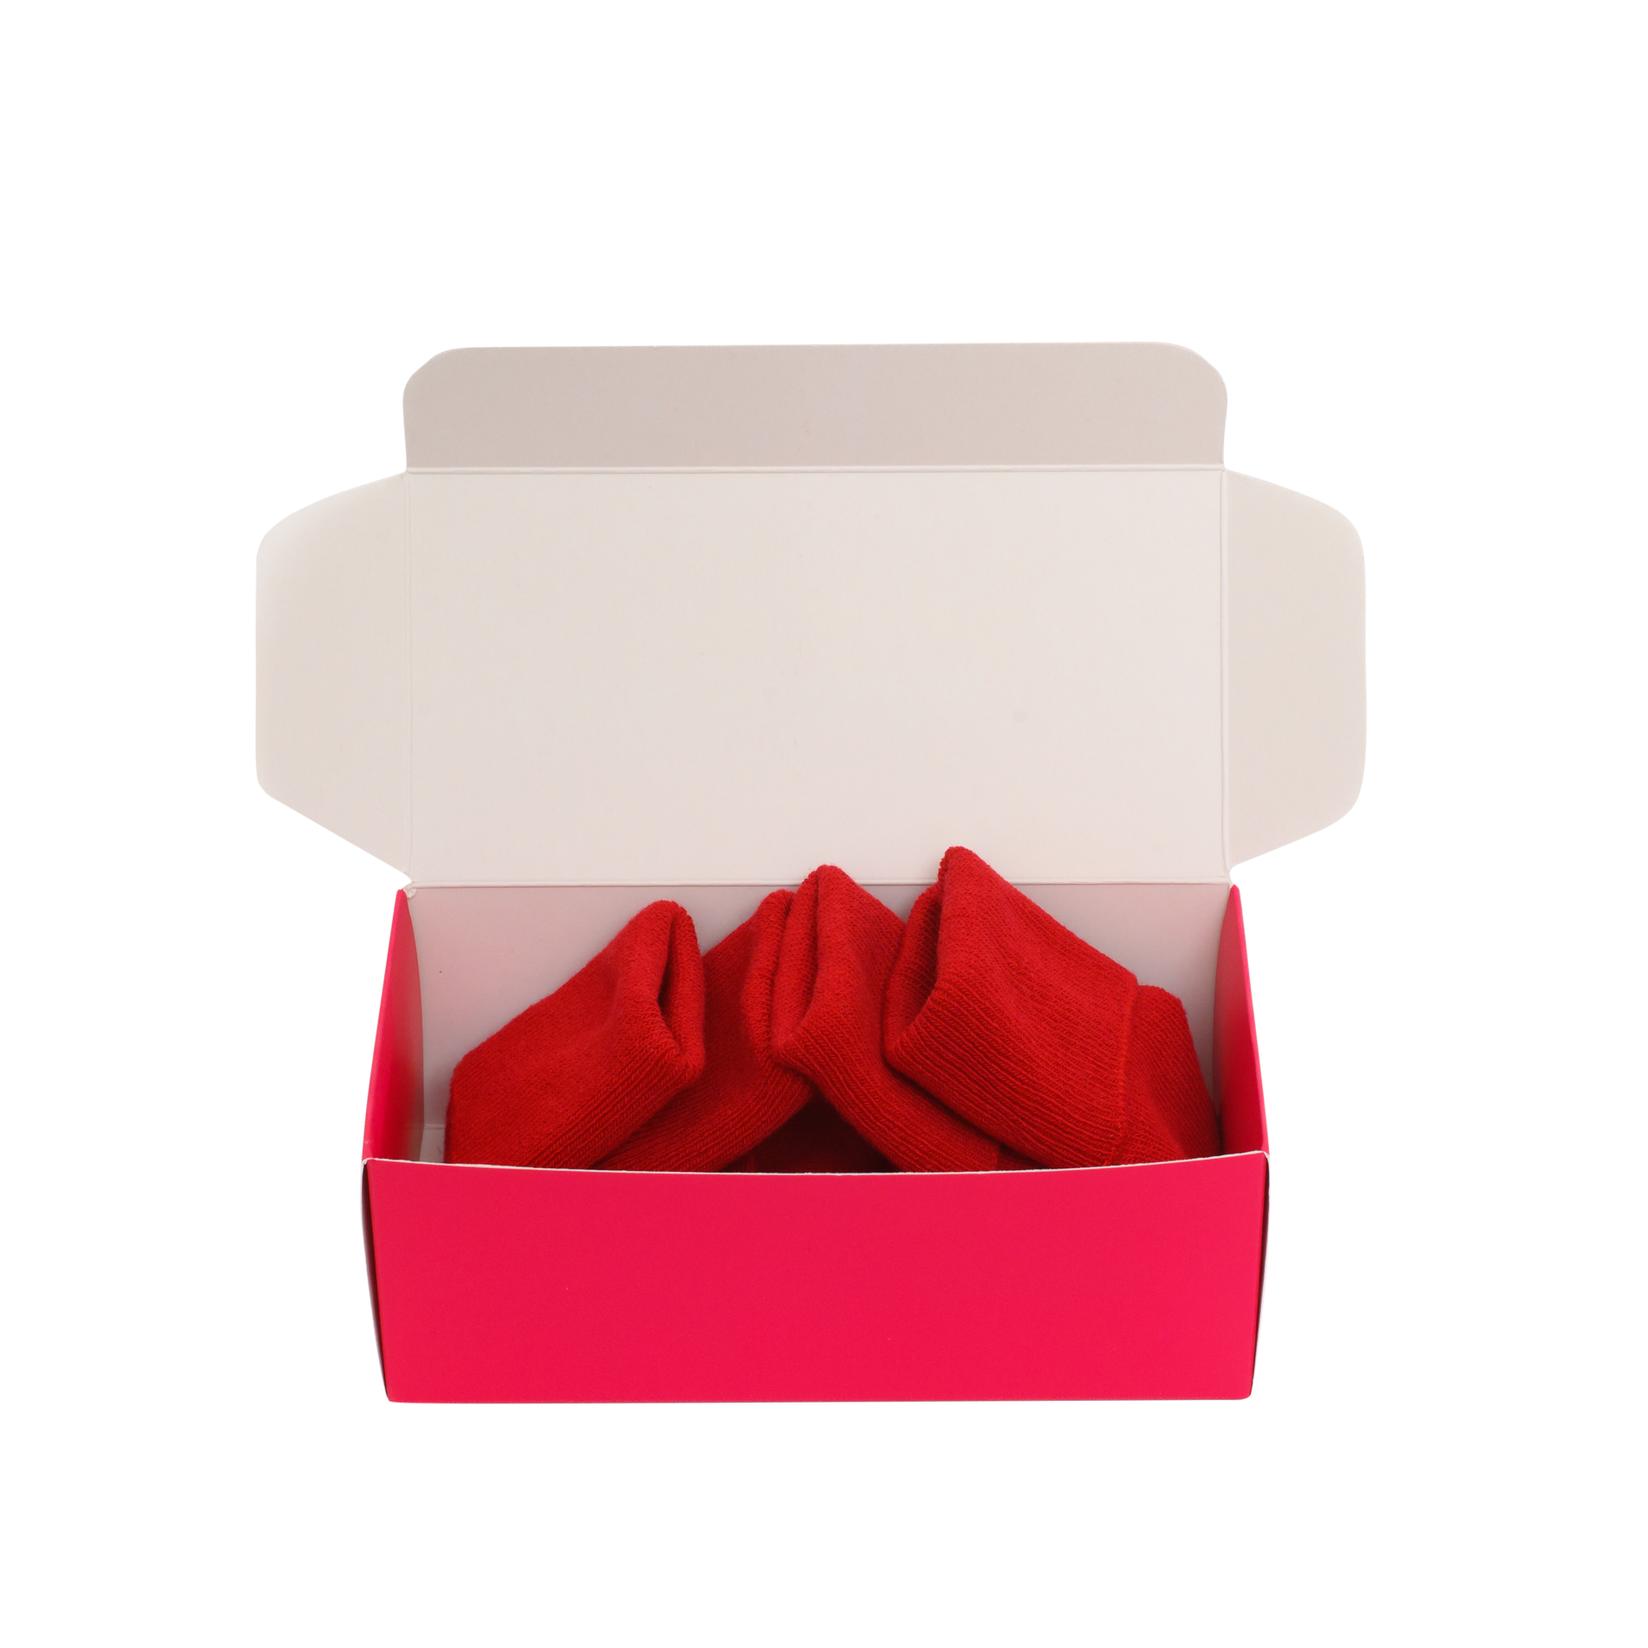 Slike BOX SOCKS Čarape za devojčice 2/1 crvene